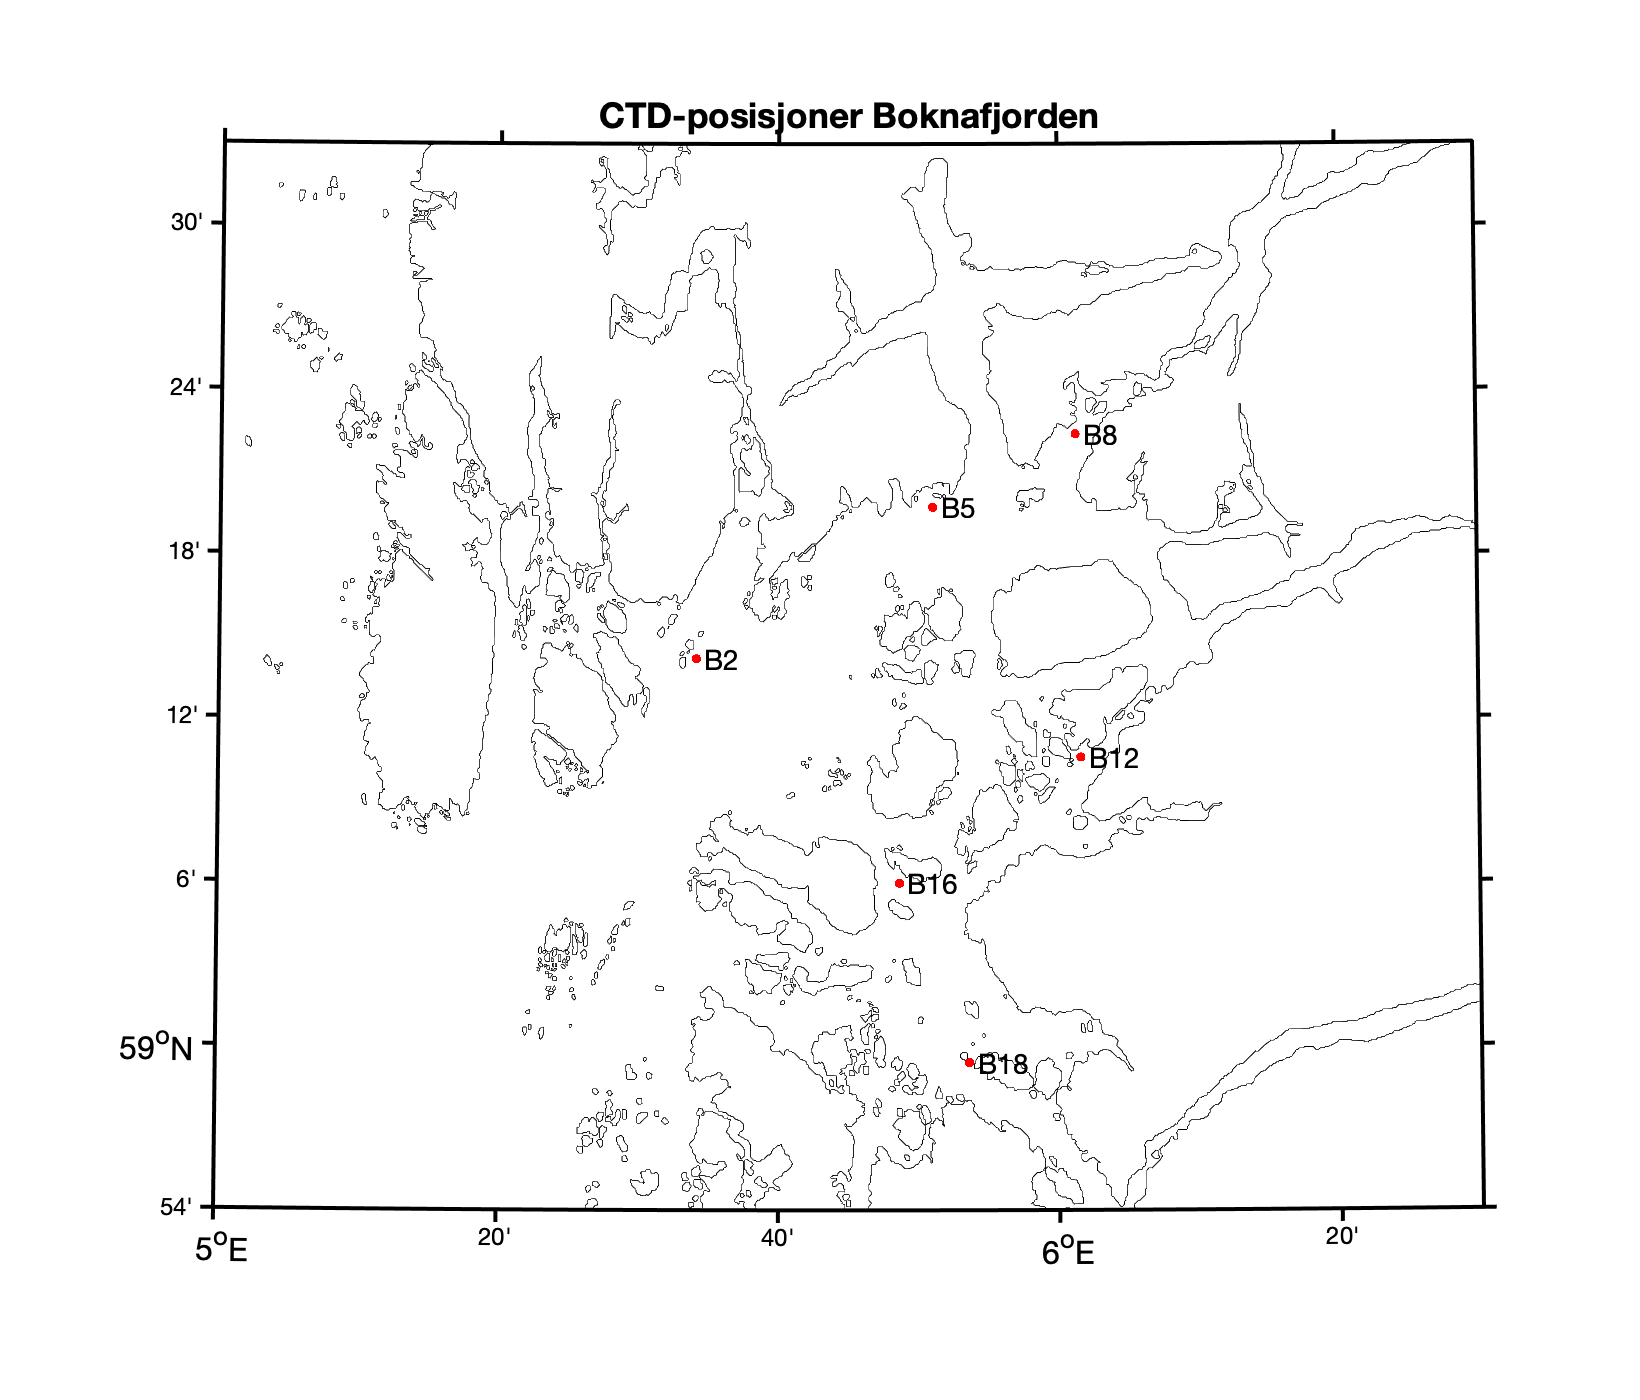 Figur 5. Posisjoner for CTD-profil i Boknafjorden som sammenfaller med posisjonene til smoltbur.